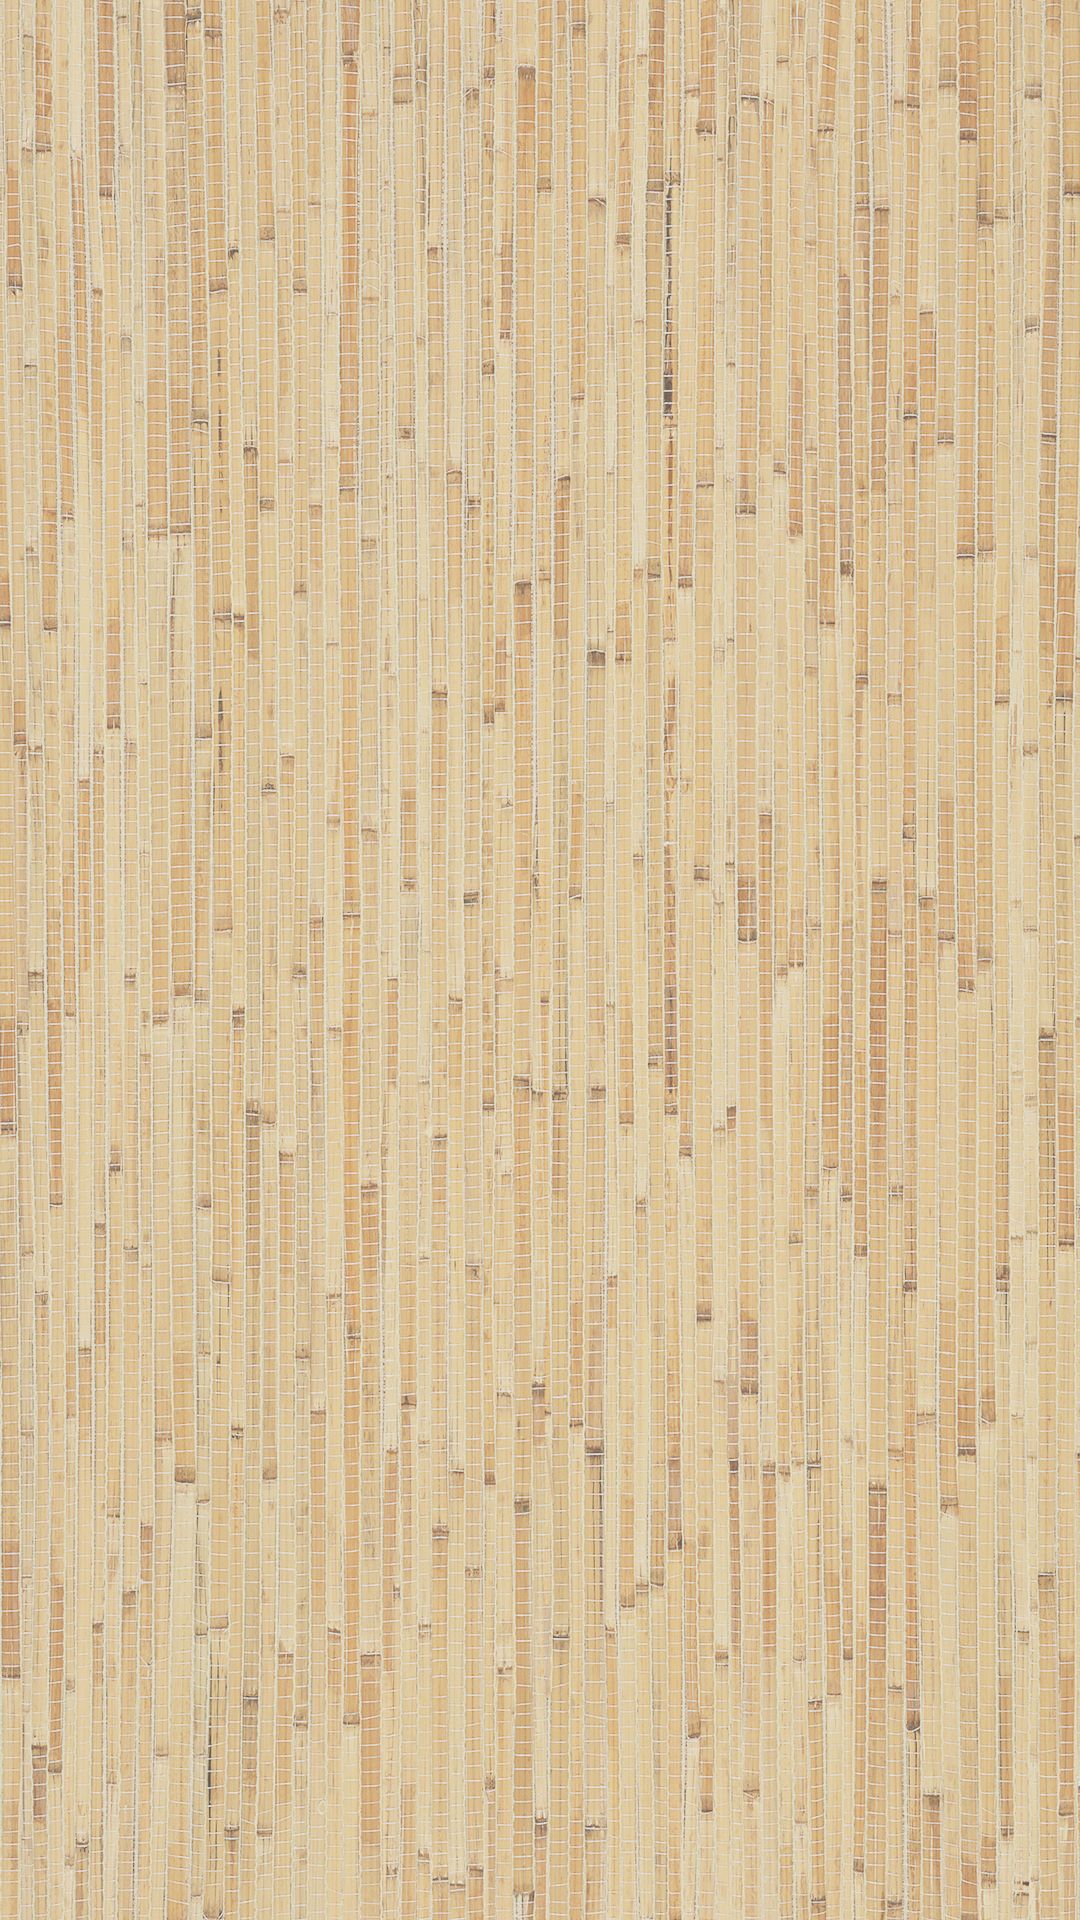 Wood Grain iPhone Wallpaper